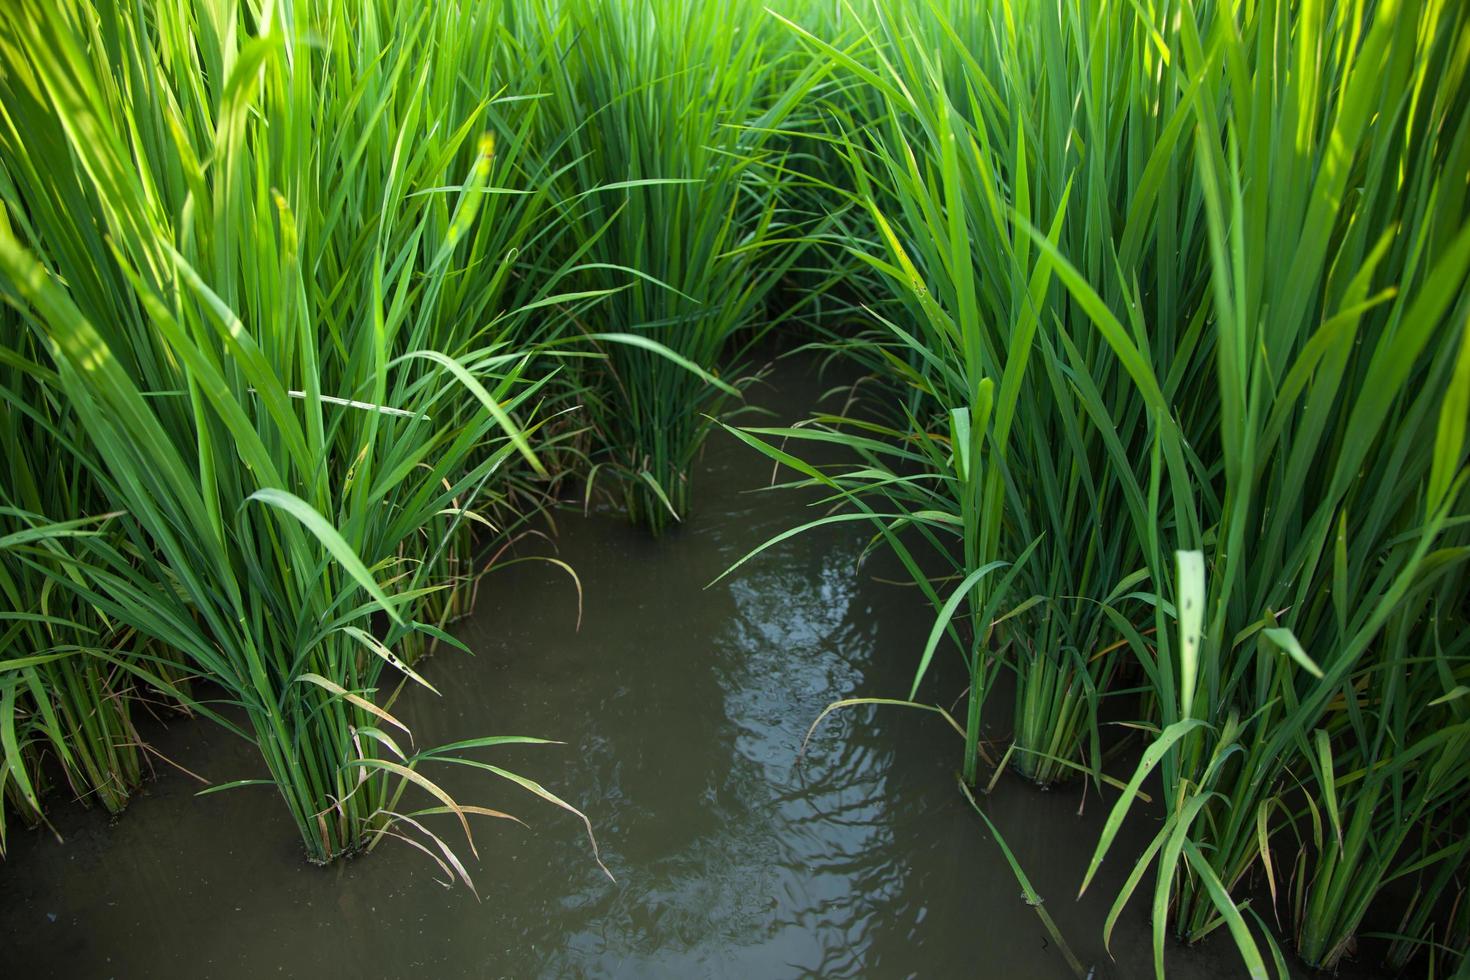 campo de arroz na tailândia foto